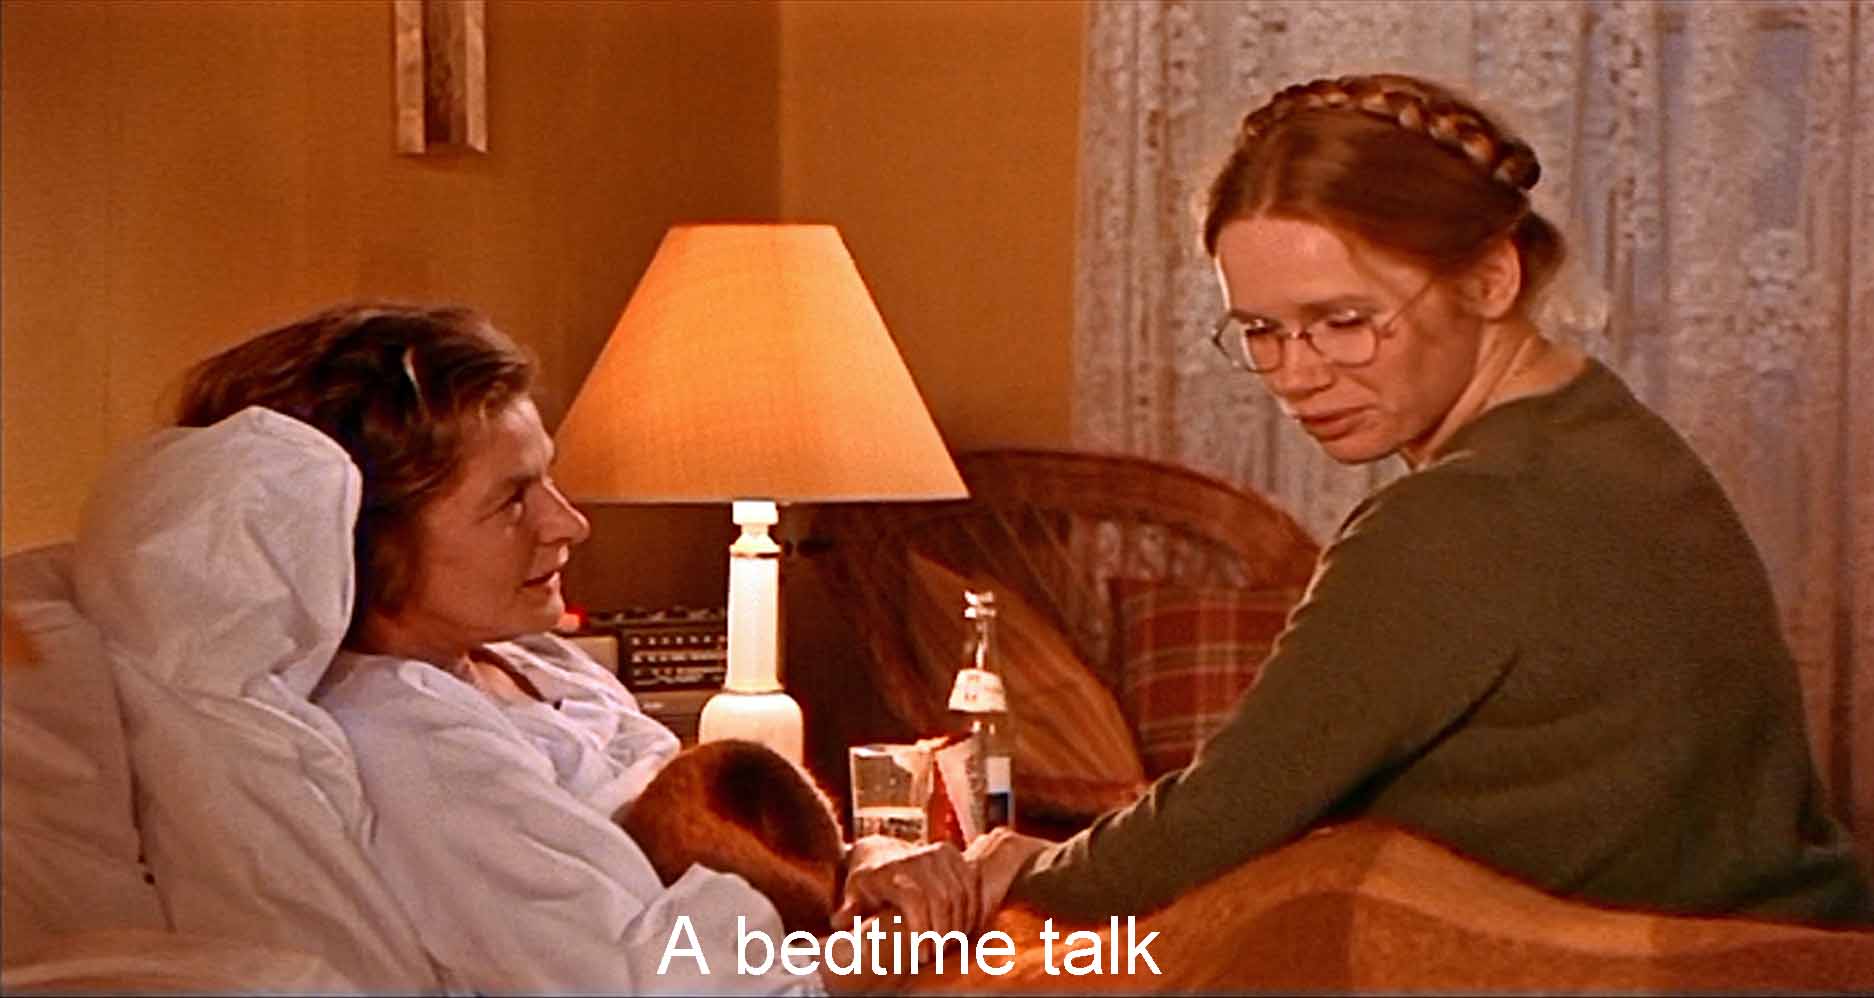 A bedtime talk